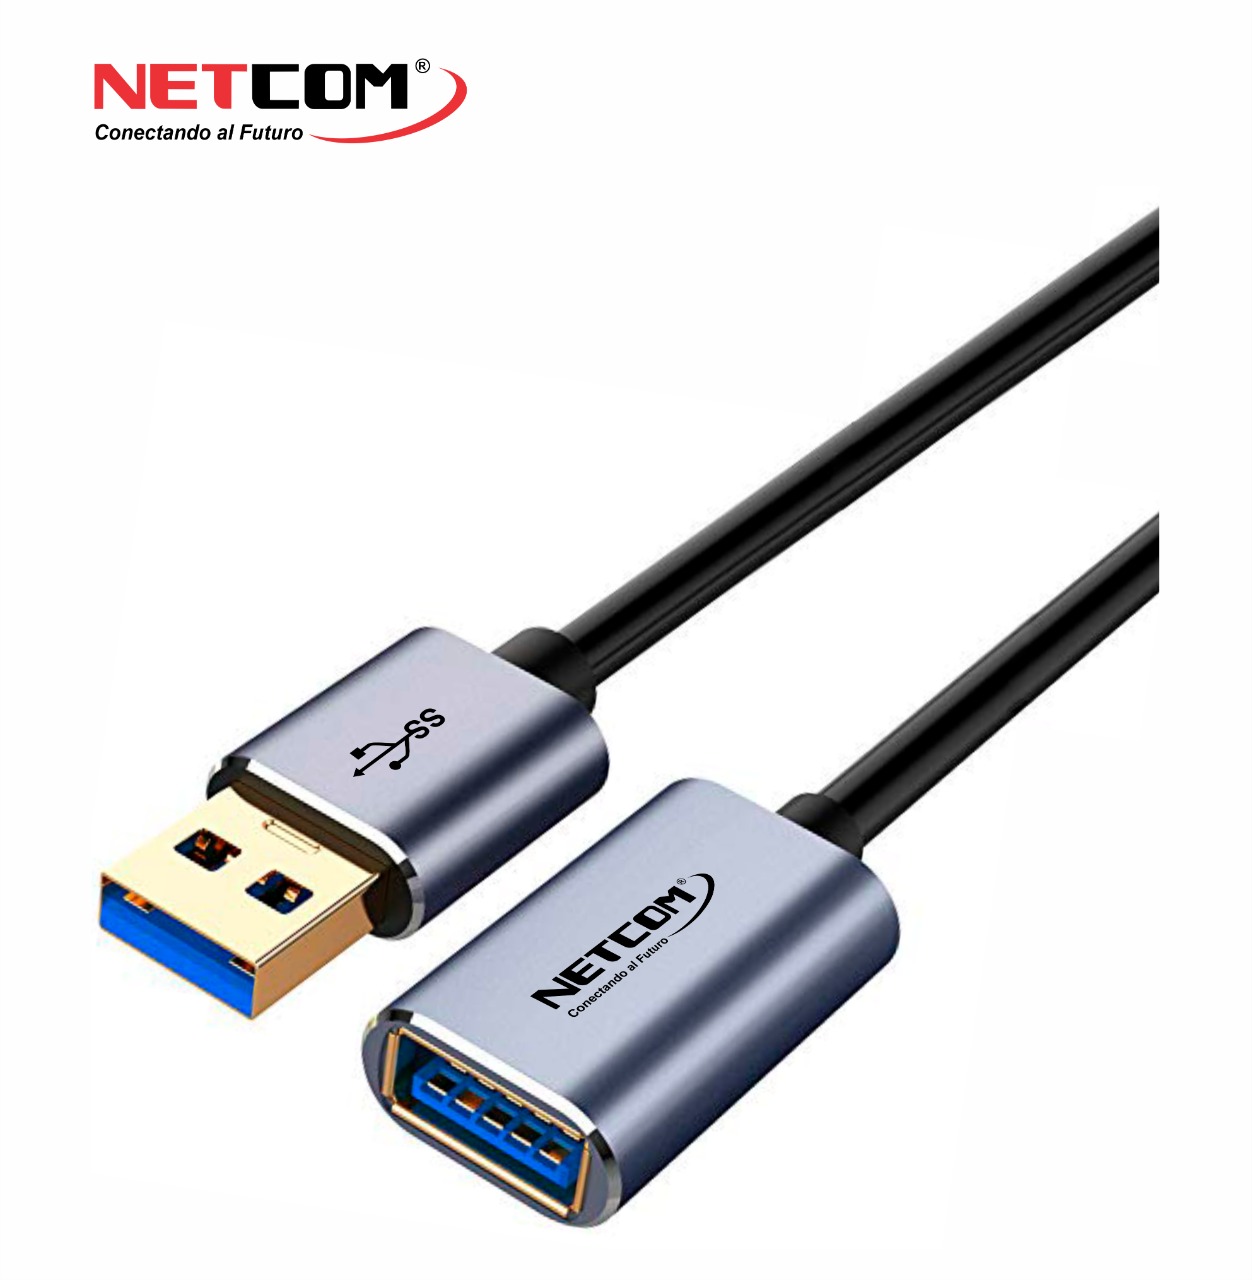 CABLE EXTENSION USB 3.0 DE 1 METRO MACHO A HEMBRA NETCOM – Compukaed